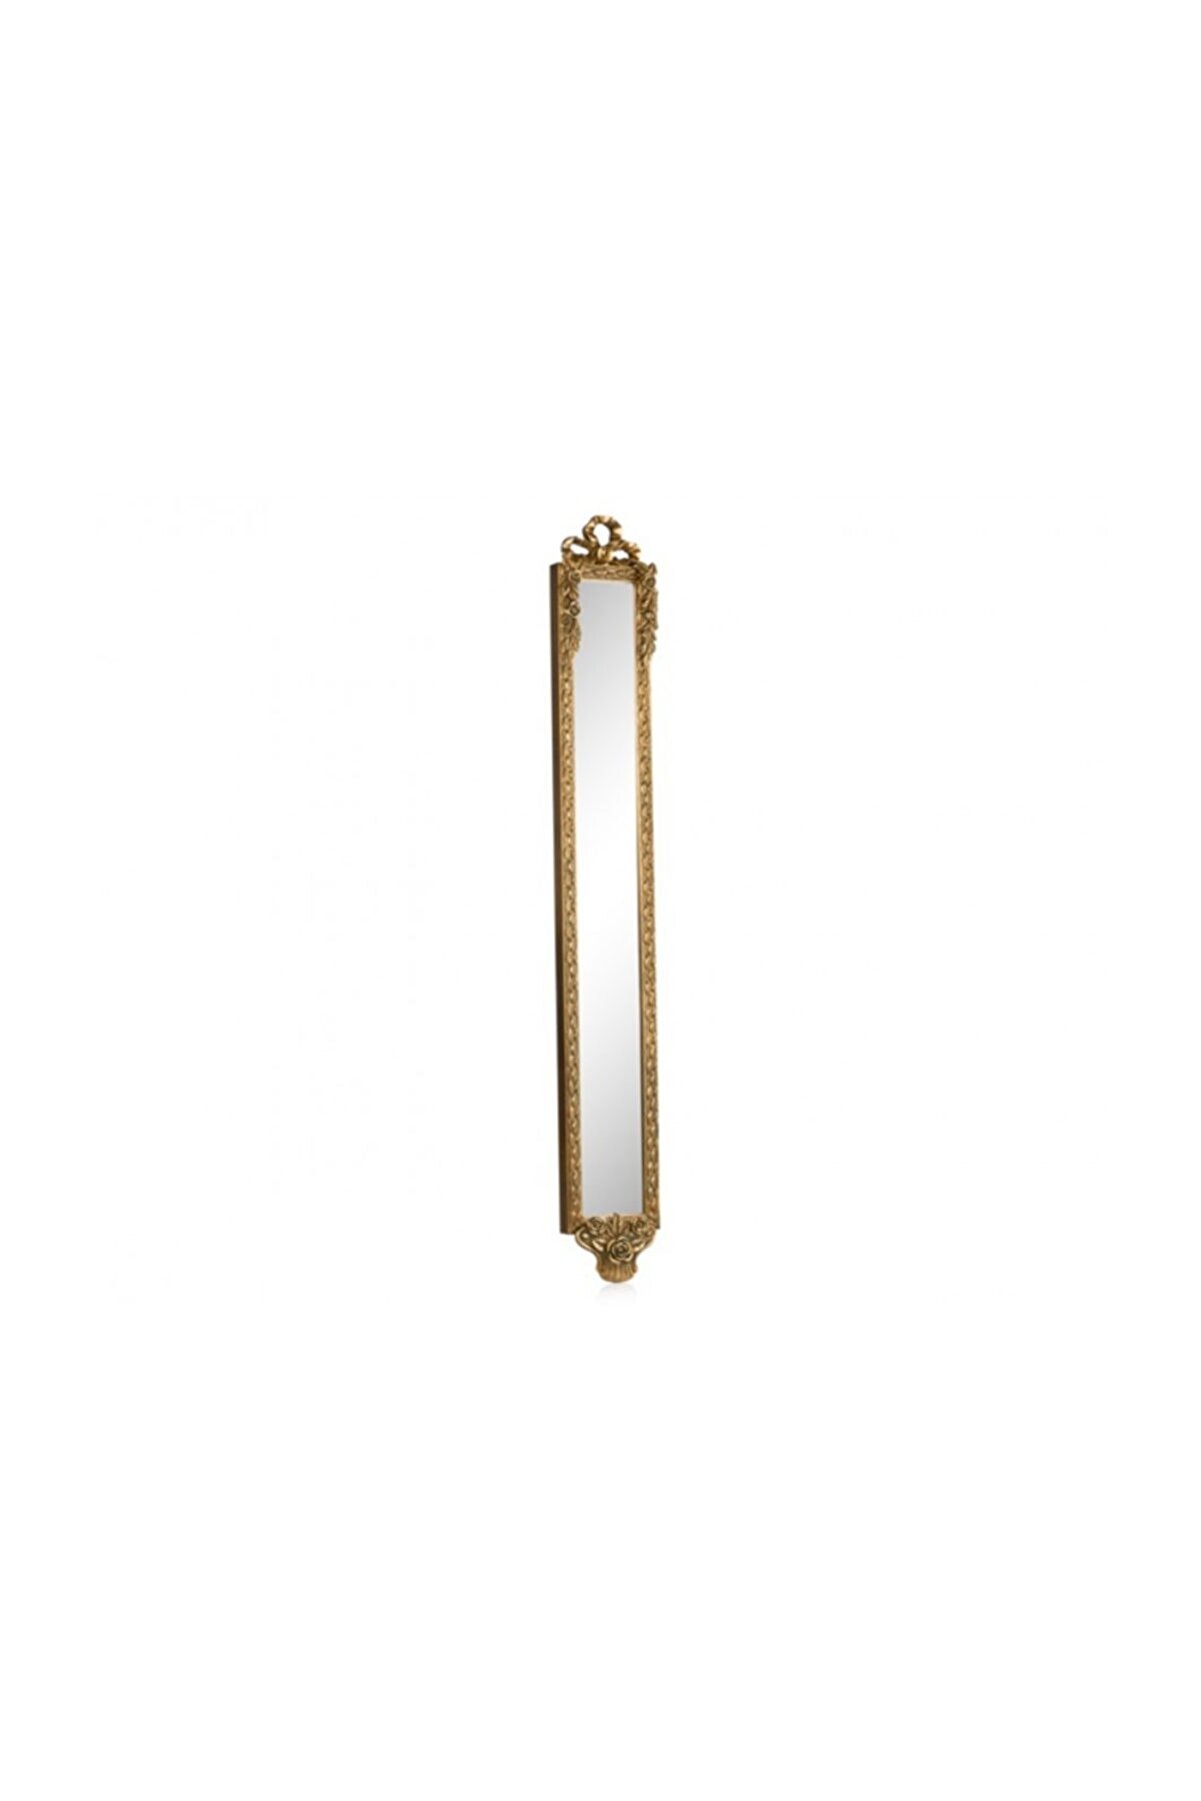 Porio Kurdelalı Altın Uzun Ince Ayna 109x13 cm